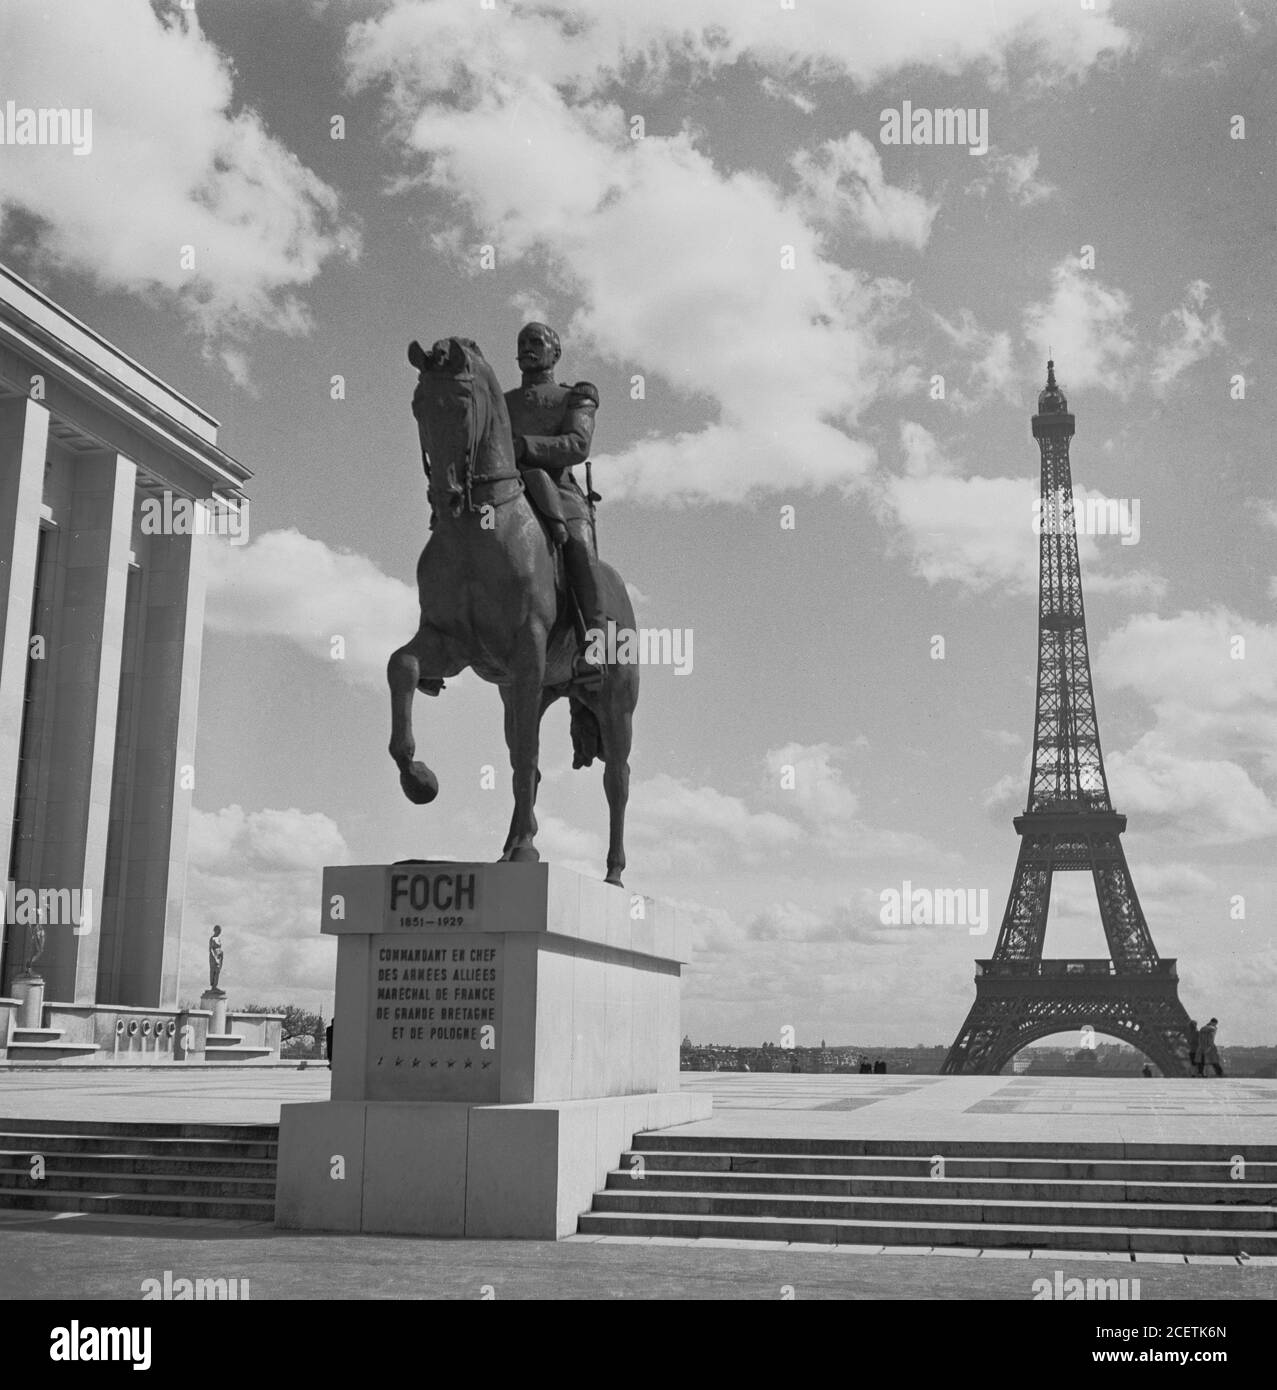 Anni '50, immagine storica che mostra il satuto di Ferdinand Foch (1851-1929) Comandante in Chef delle forze alleate alla Torre Eiffel, Parigi, Francia. Foto Stock